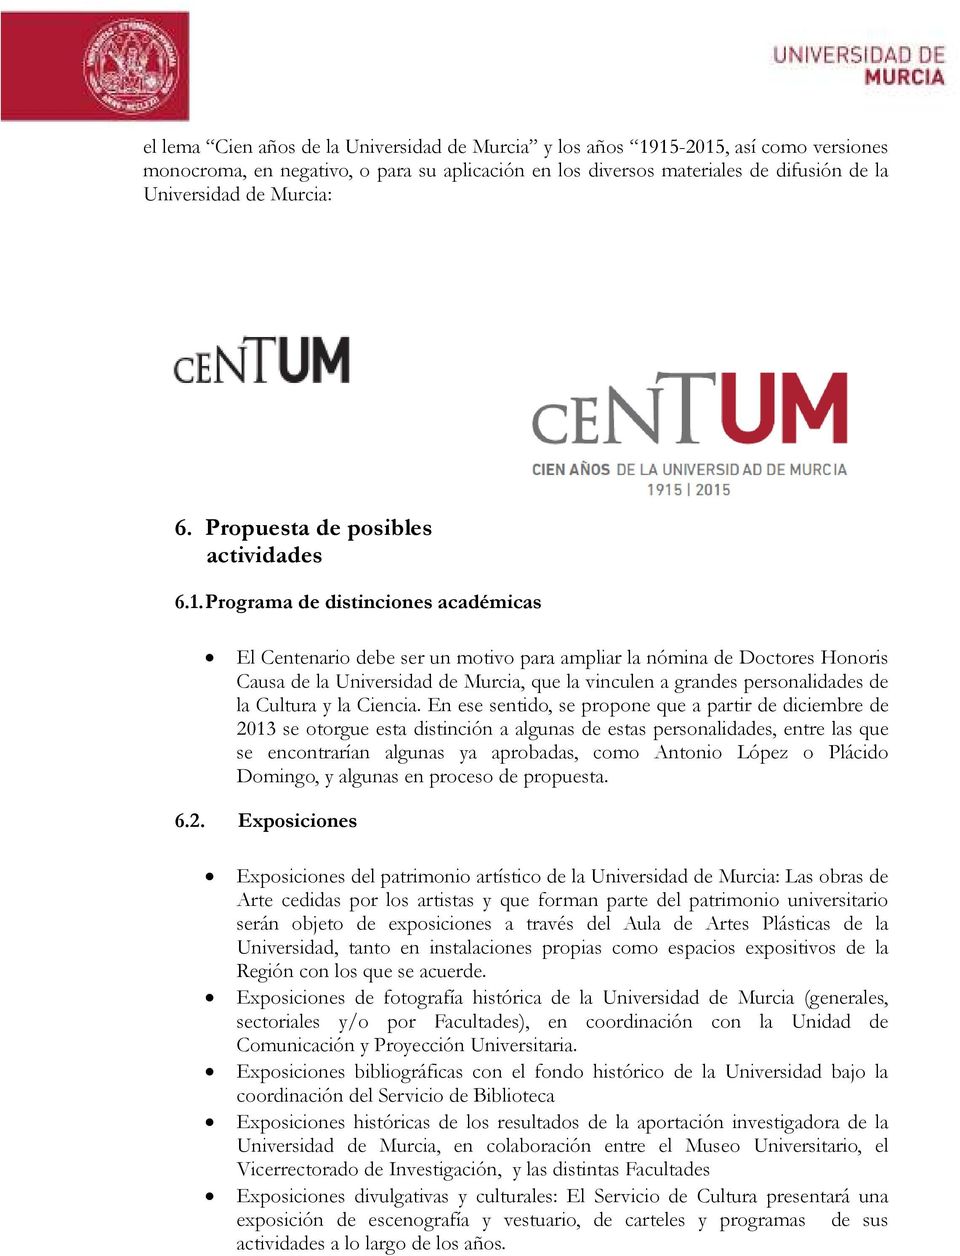 Programa de distinciones académicas El Centenario debe ser un motivo para ampliar la nómina de Doctores Honoris Causa de la Universidad de Murcia, que la vinculen a grandes personalidades de la